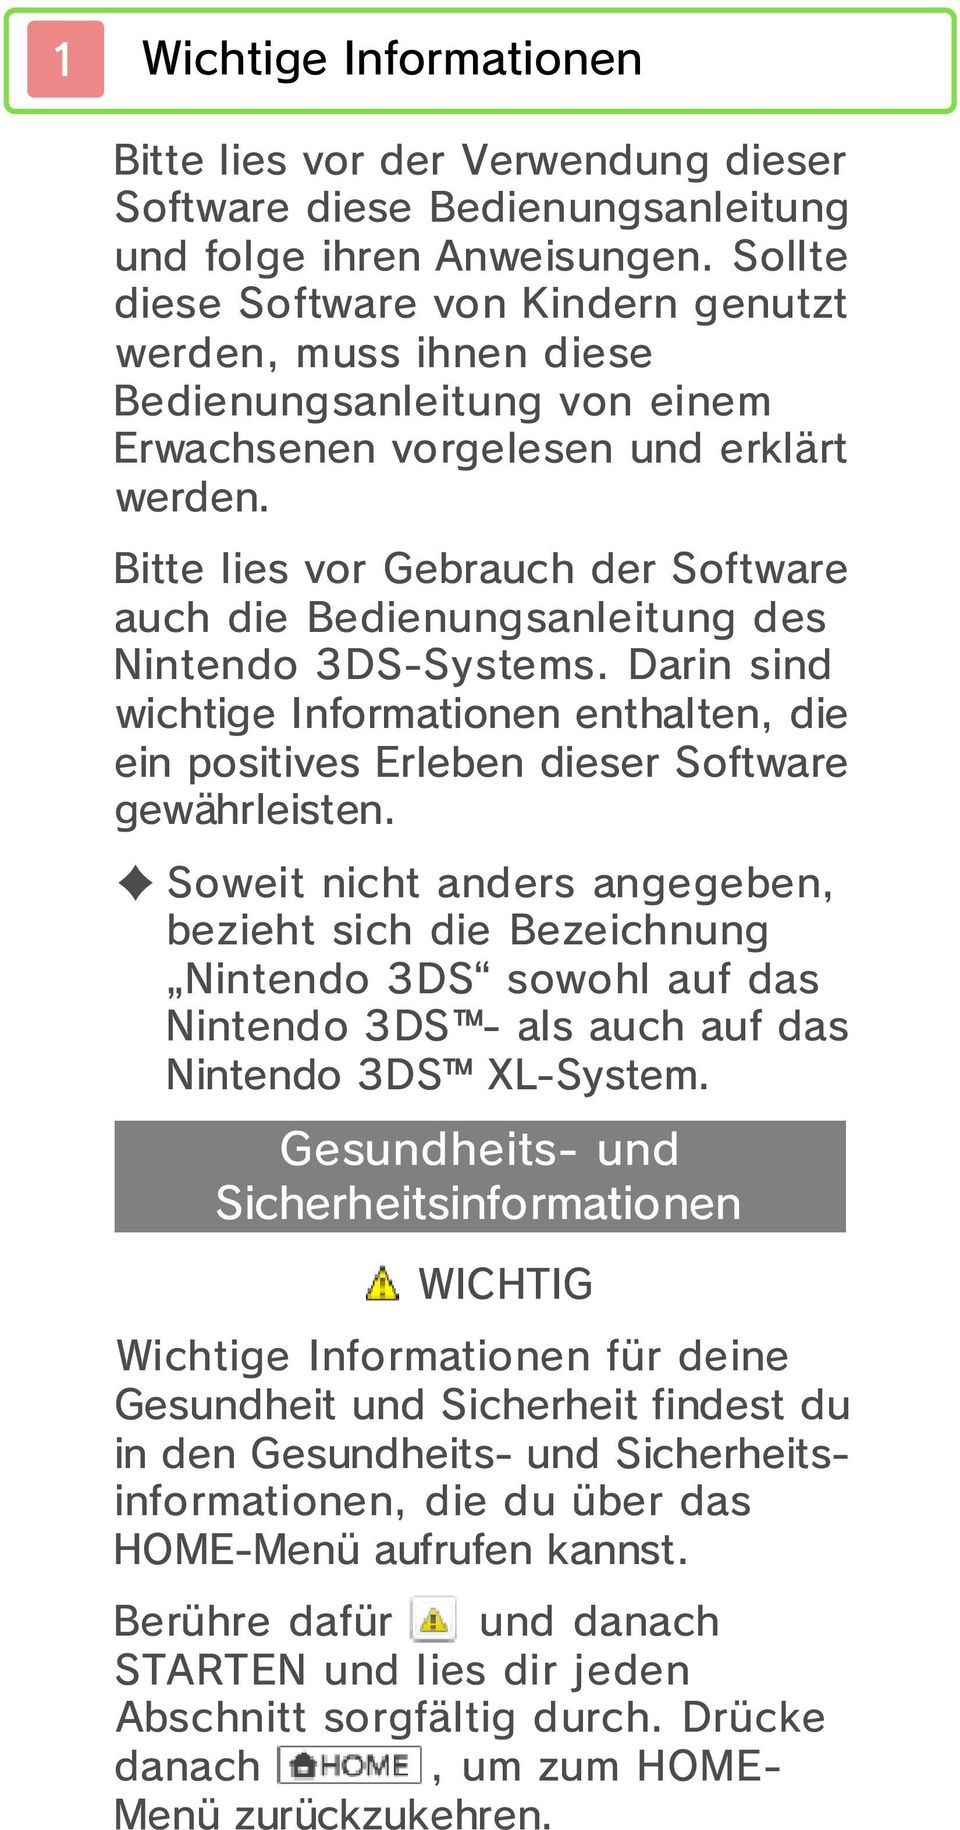 Bitte lies vor Gebrauch der Software auch die Bedienungsanleitung des Nintendo 3DS-Systems. Darin sind wichtige Informationen enthalten, die ein positives Erleben dieser Software gewährleisten.